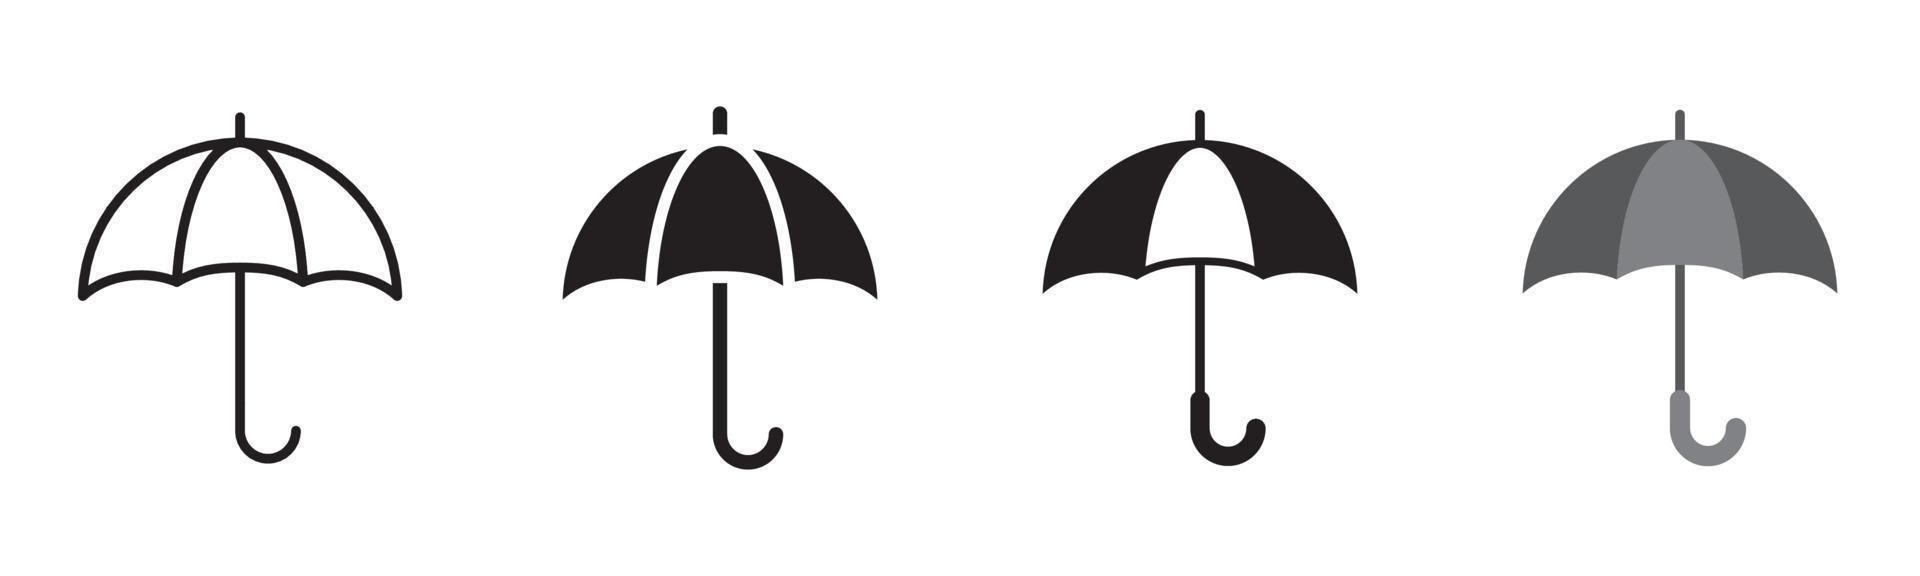 conjunto de ícones de guarda-chuva de 4, elemento de design adequado para sites, design de impressão ou aplicativo vetor